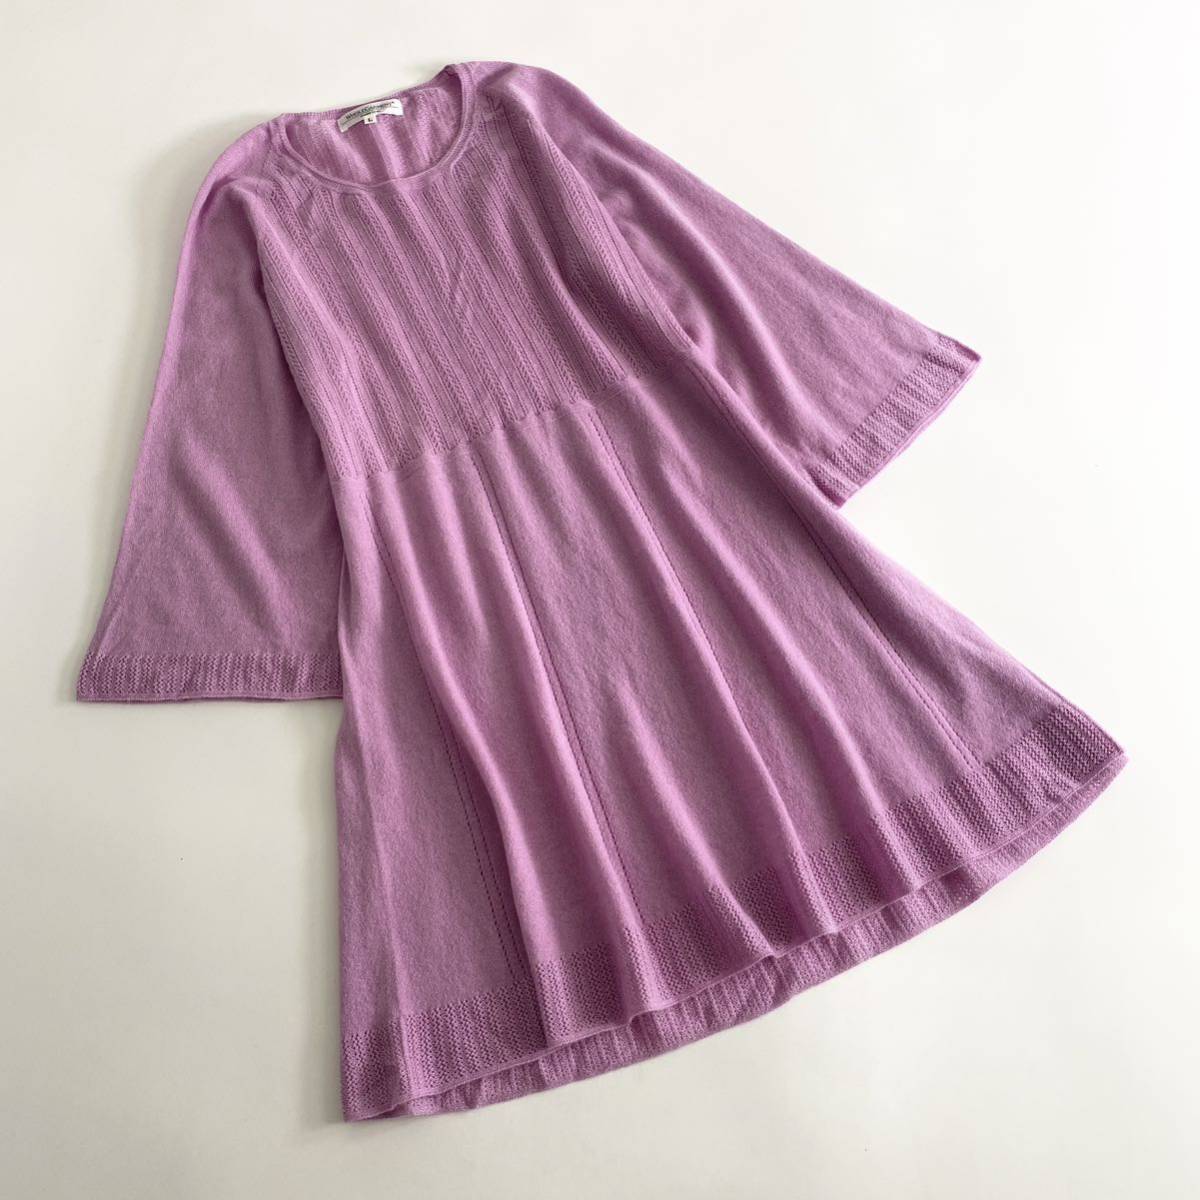 Vb11 日本製 WHOLEGARMENT ホールガーメント カシミヤニットワンピース カシミヤ100% サイズL ピンクパープル レディース ドレス dress_画像1